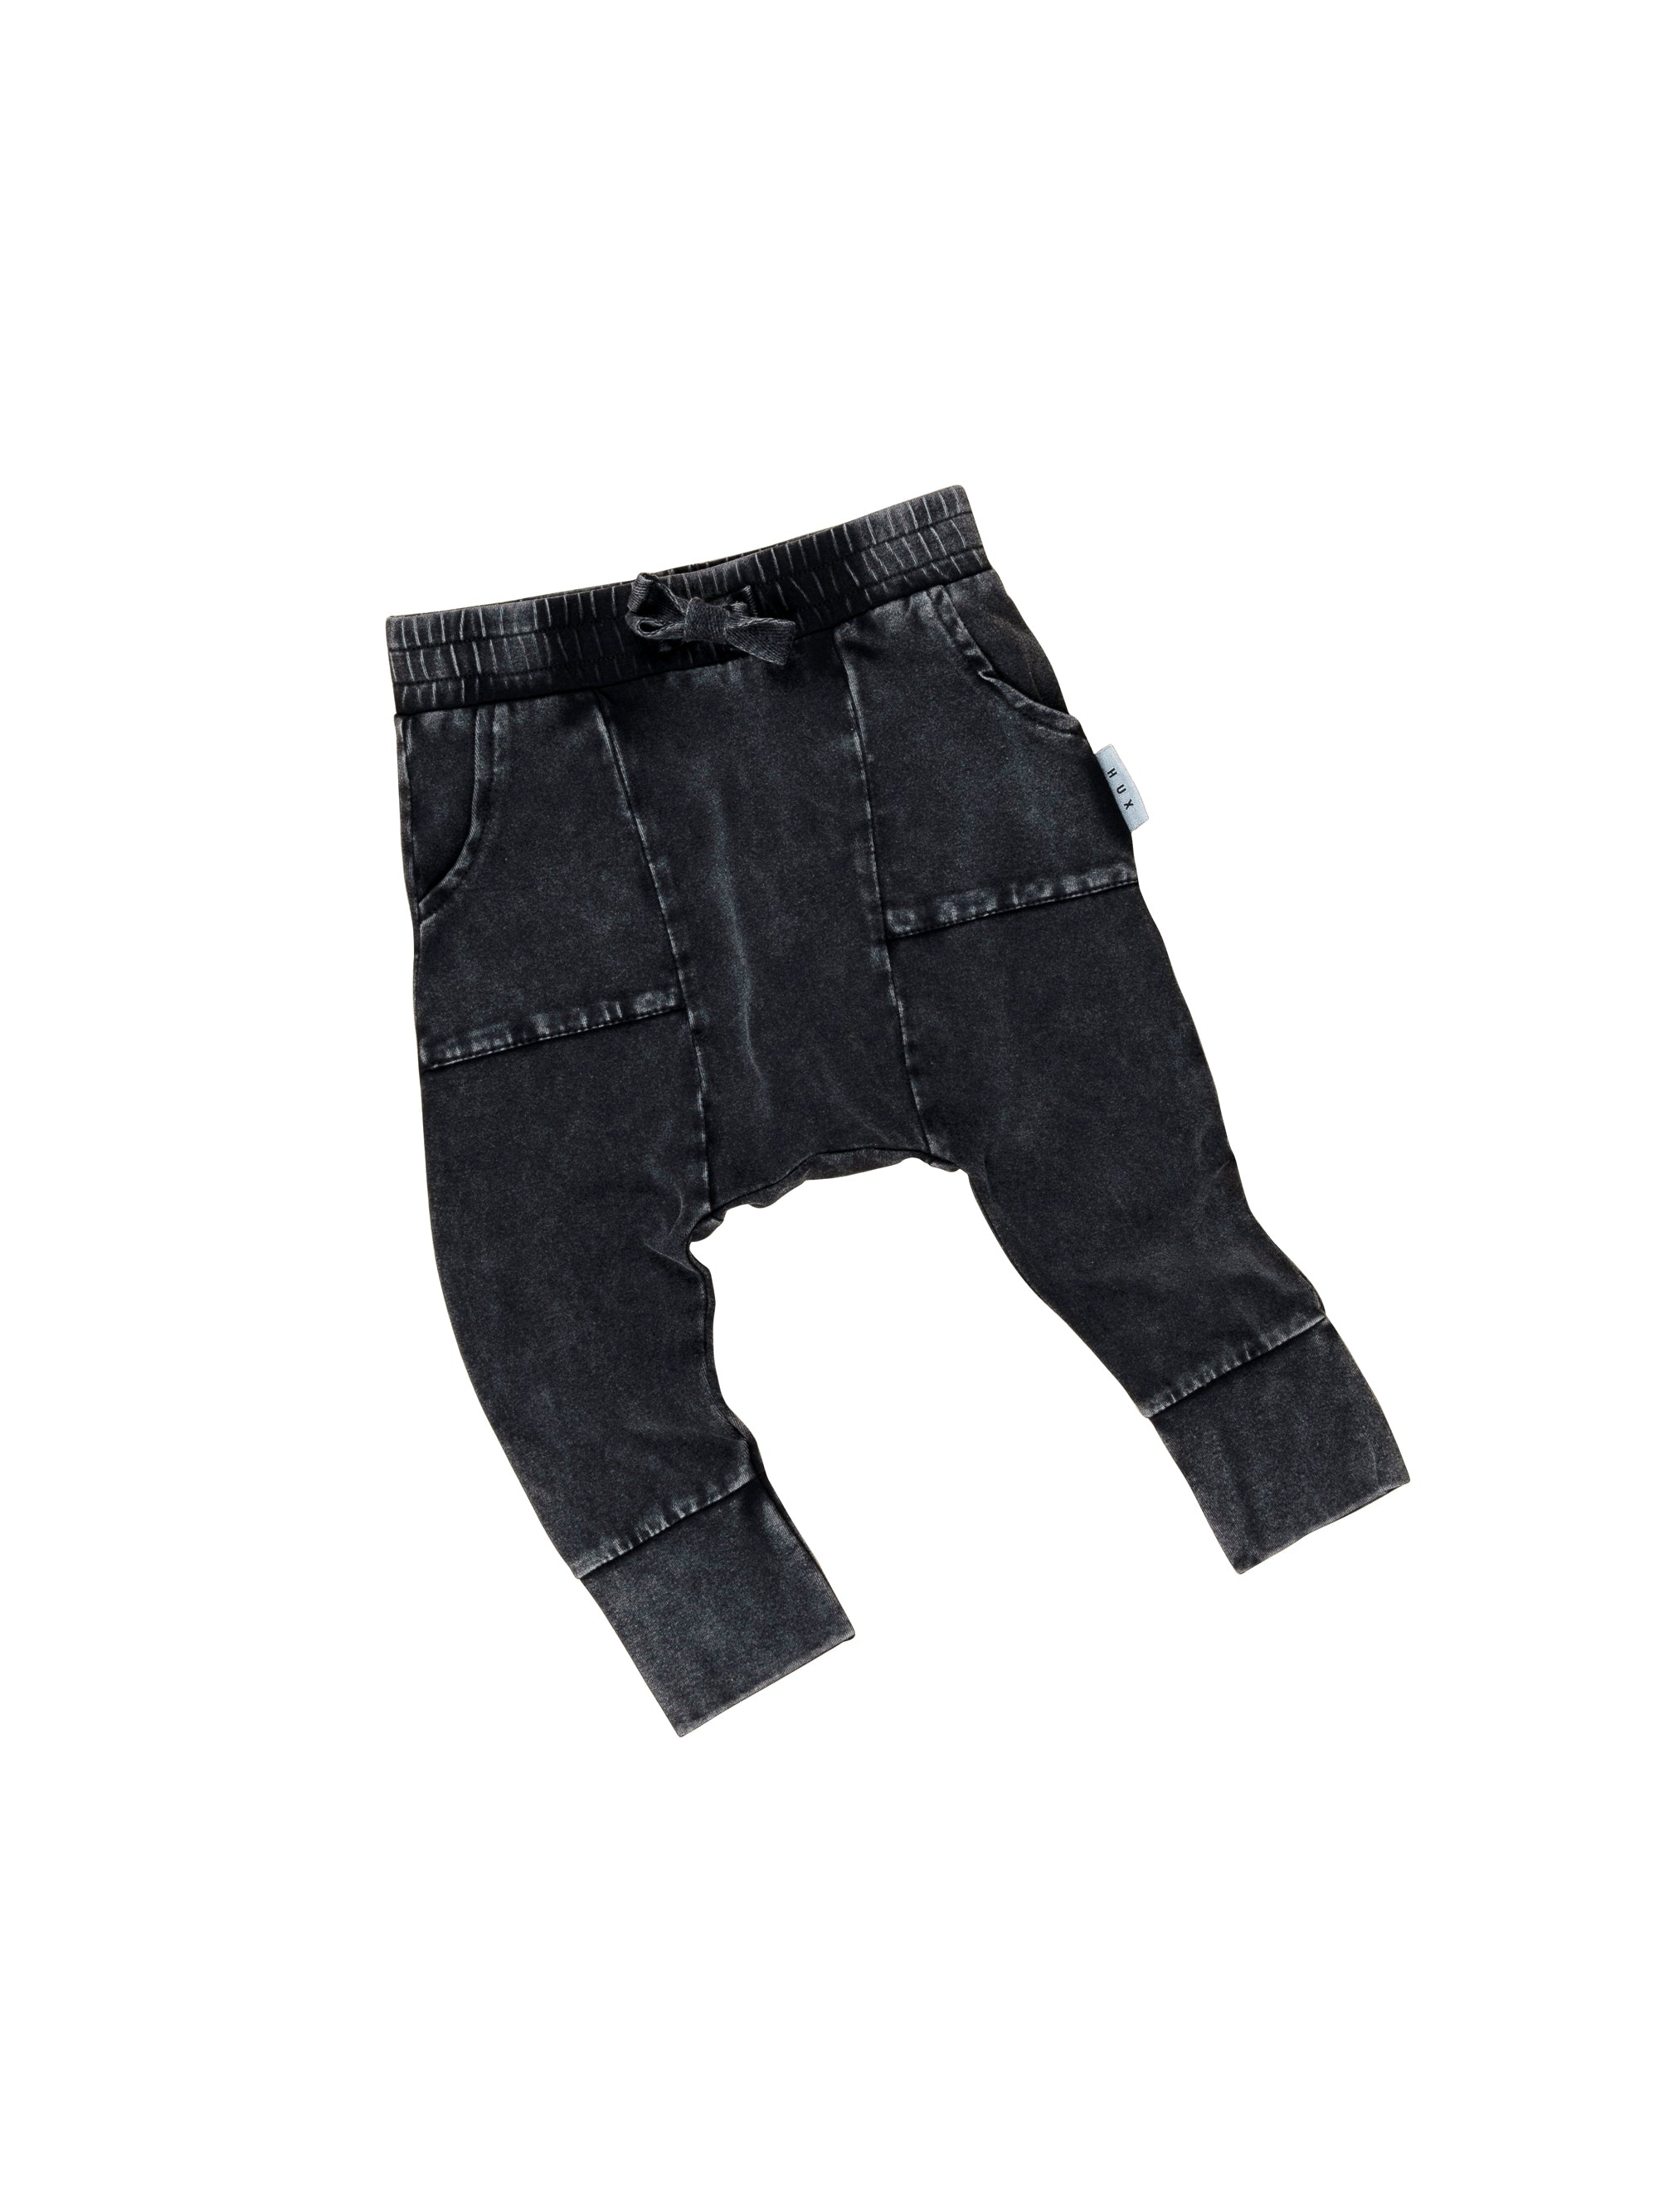 Huxbaby Vintage Jersey Pocket  Drop Crotch Pant - Vintage Black